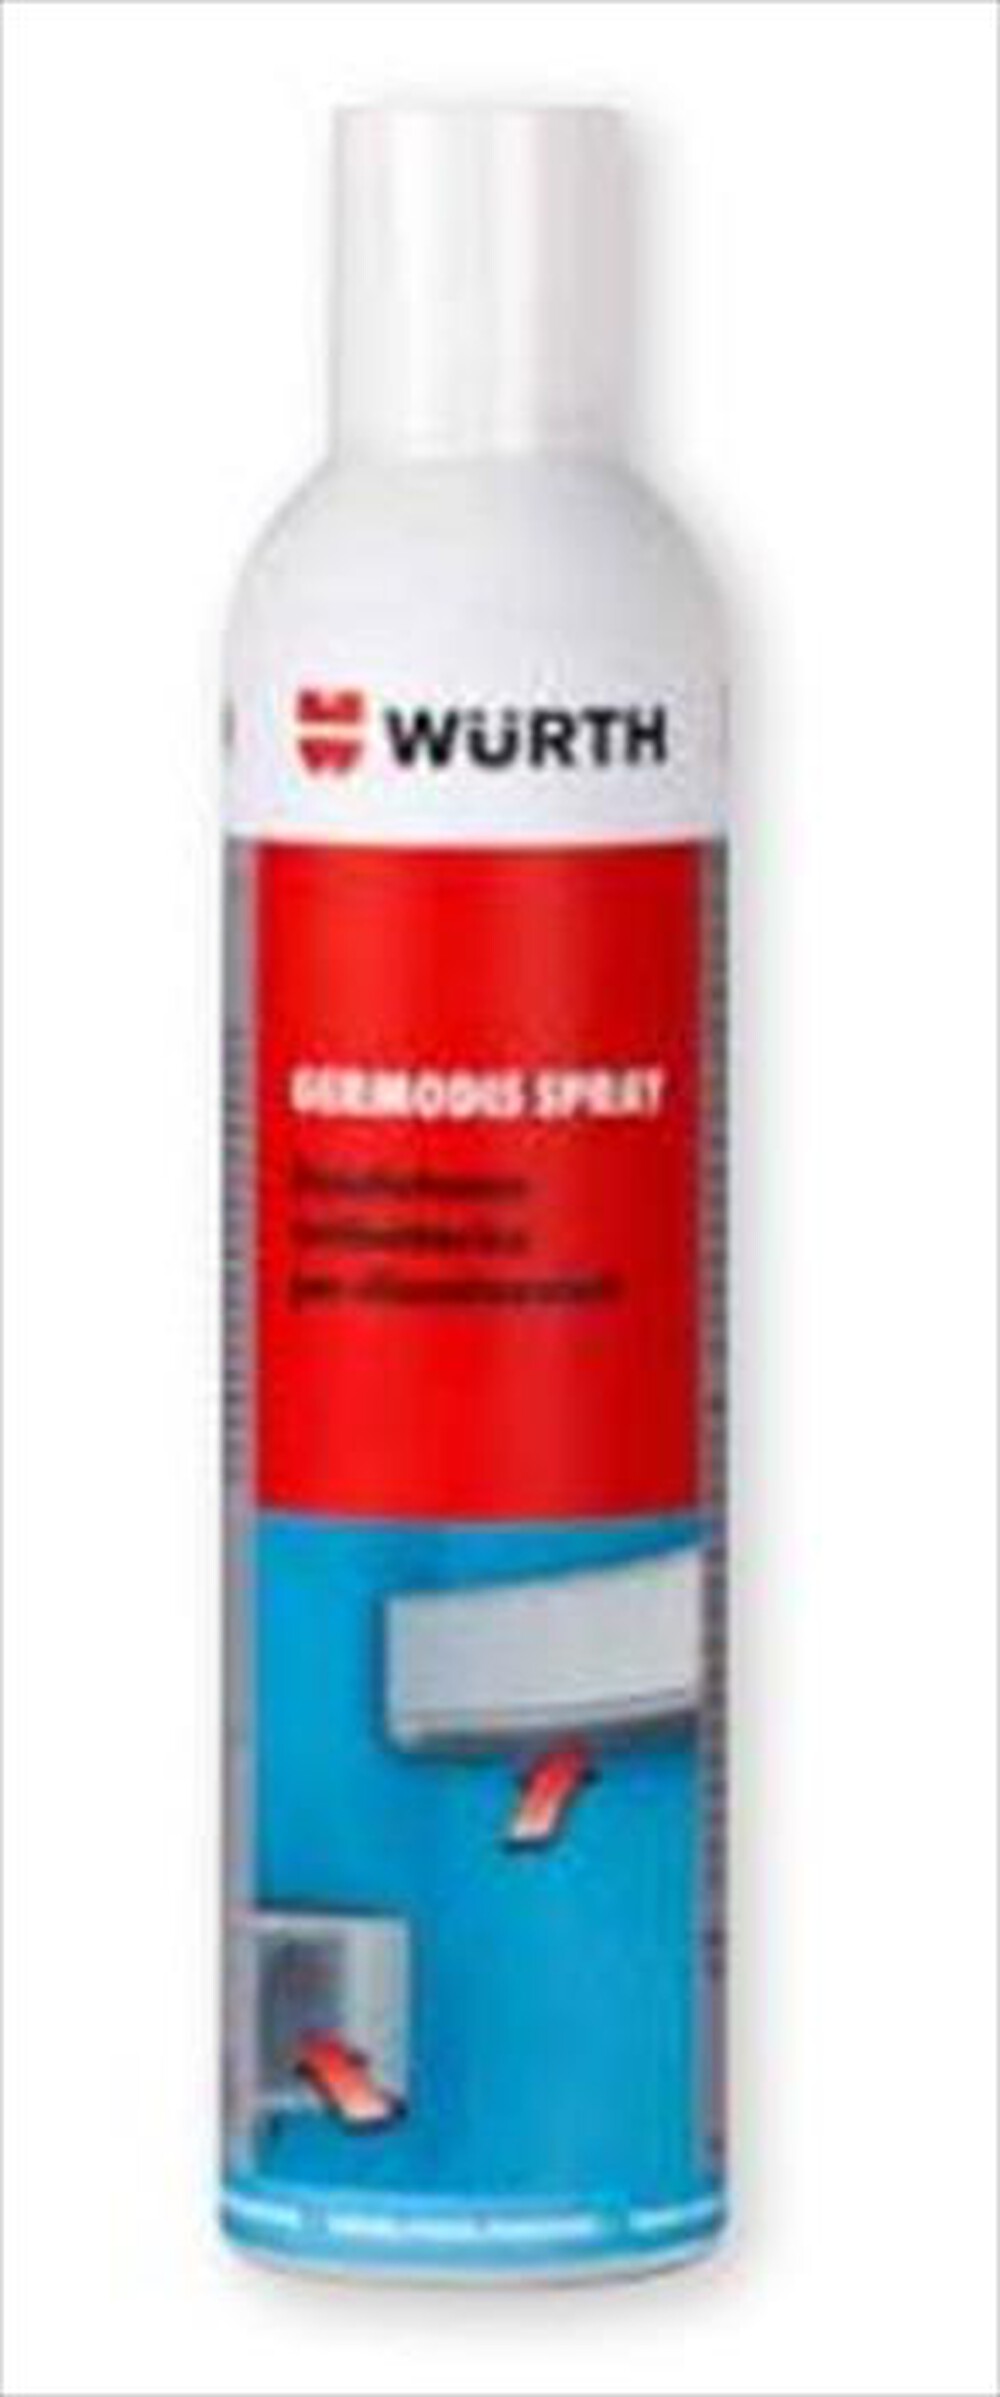 "WURTH - Disinfettante Deodorante Germodis Spray - "